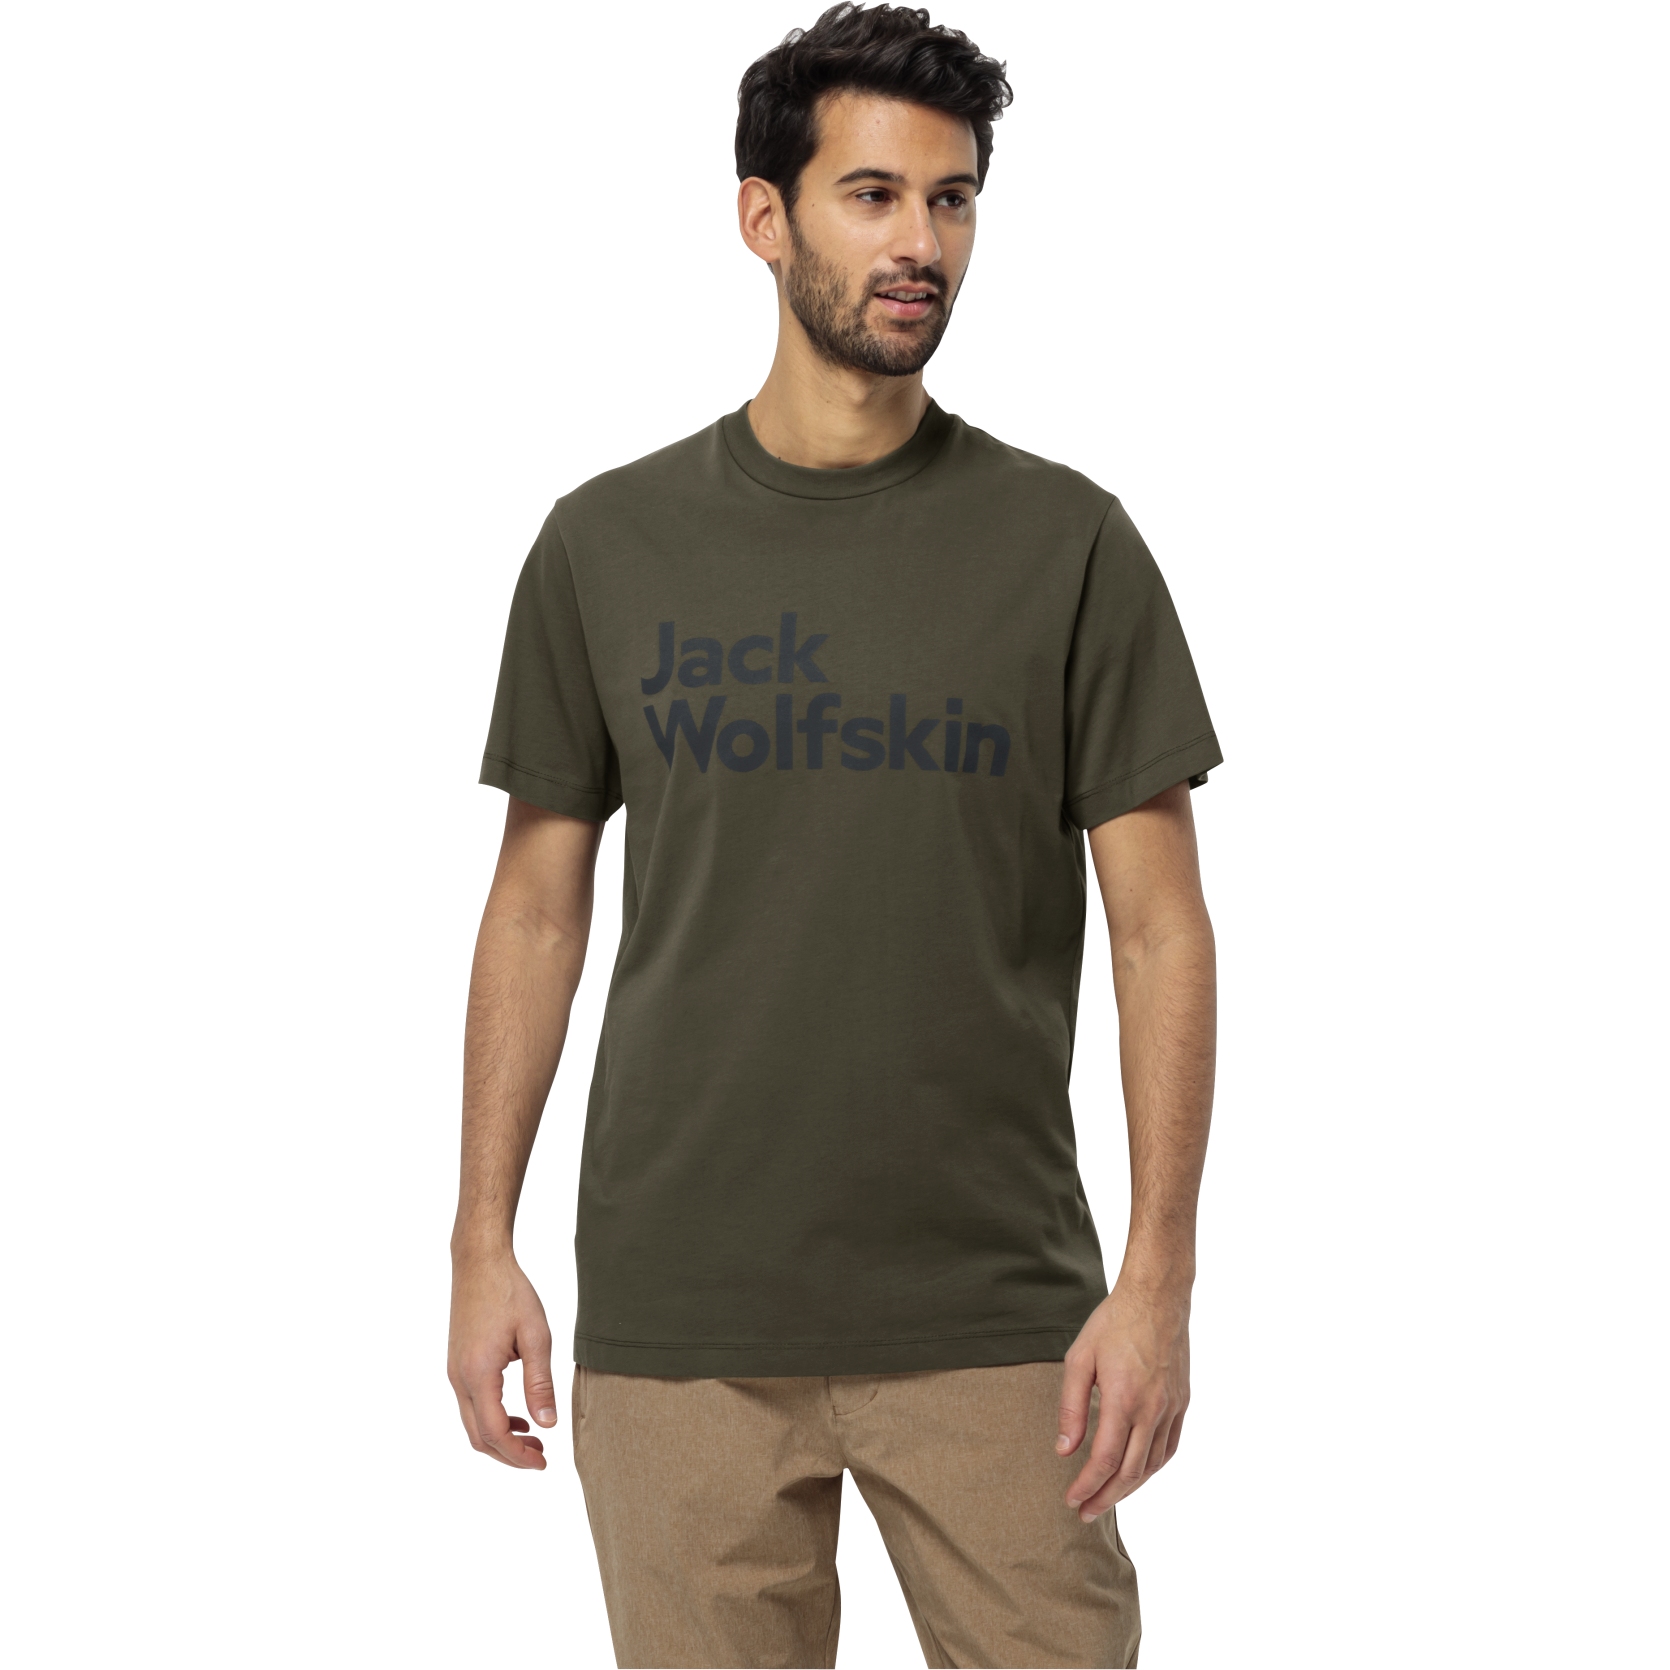 Jack Wolfskin Essential Logo T-Shirt - island moss | BIKE24